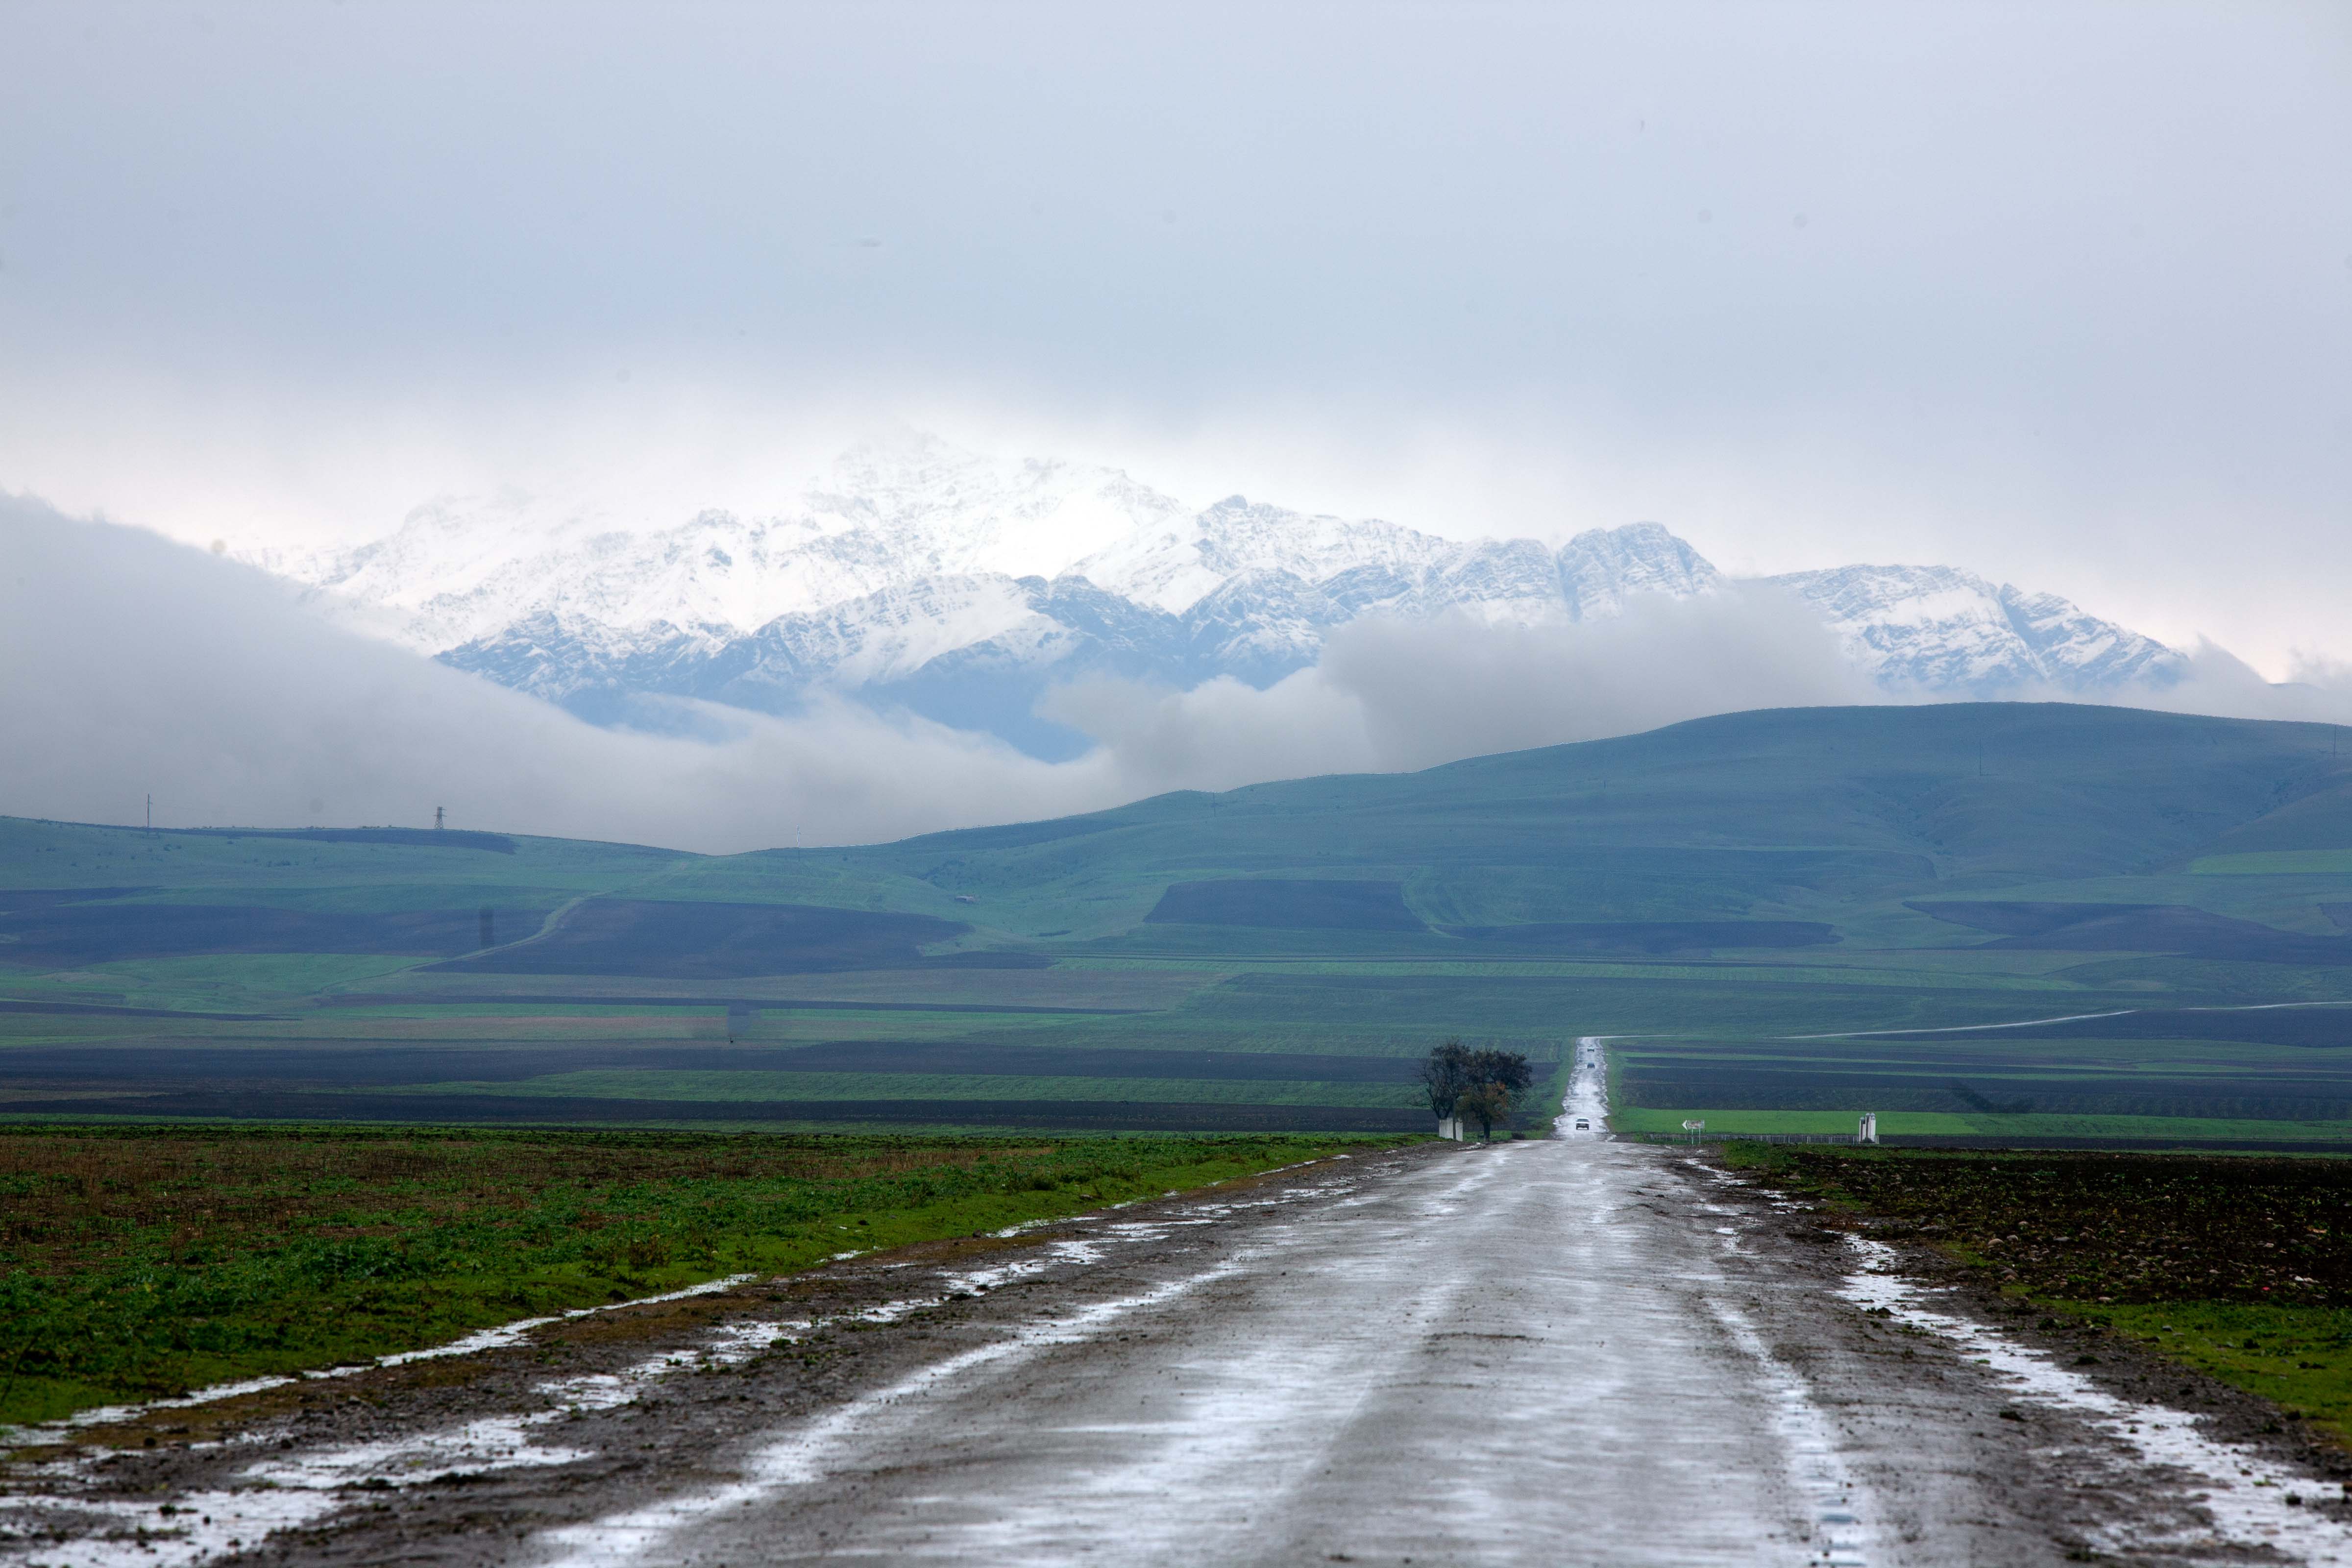 Azerbaijan, Shaki (SAK) Prov, Road And Mountains, 2009, IMG 8502